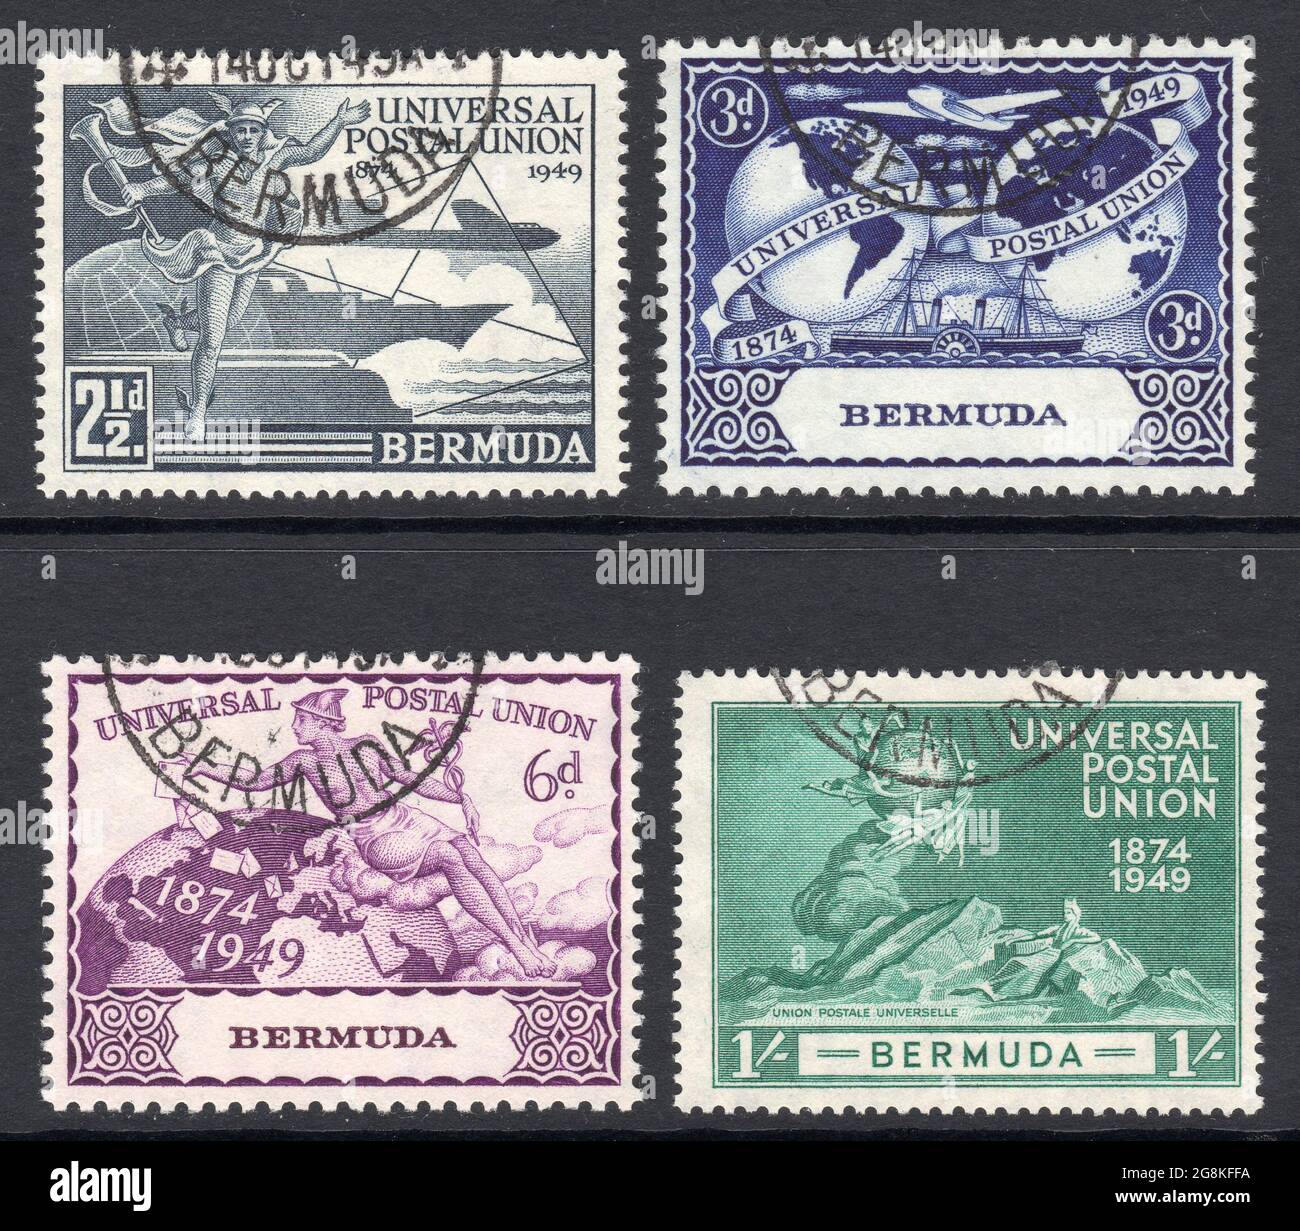 1949 UPU usato [Unione postale universale] Set di Bermuda. Bermuda (le Isole Somers, o Isole Bermuda) è un territorio britannico d'oltremare nell'Oceano Atlantico settentrionale. Foto Stock